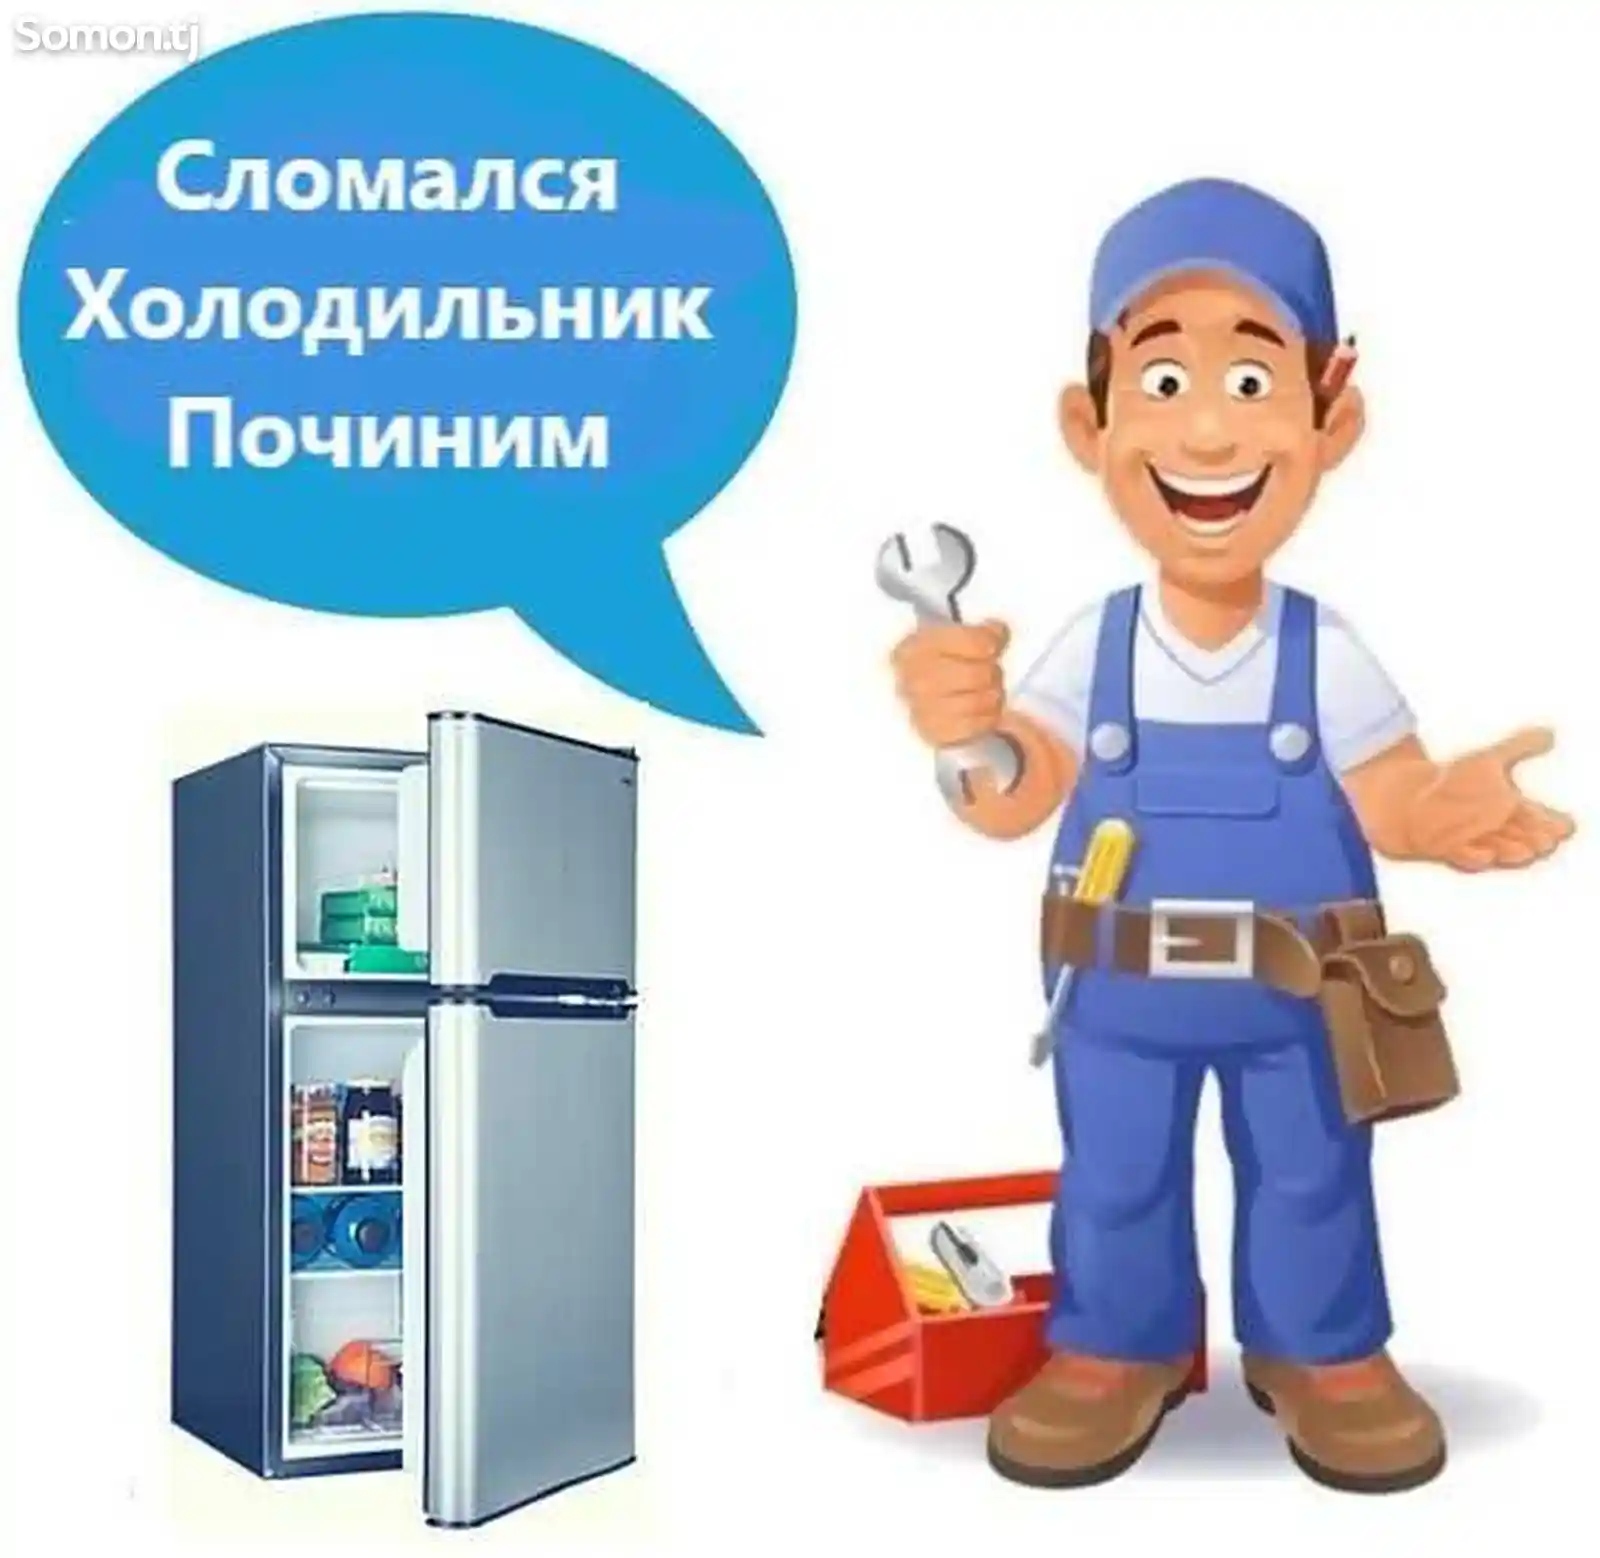 Услуги мастера по ремонту холодильников и кондиционеров